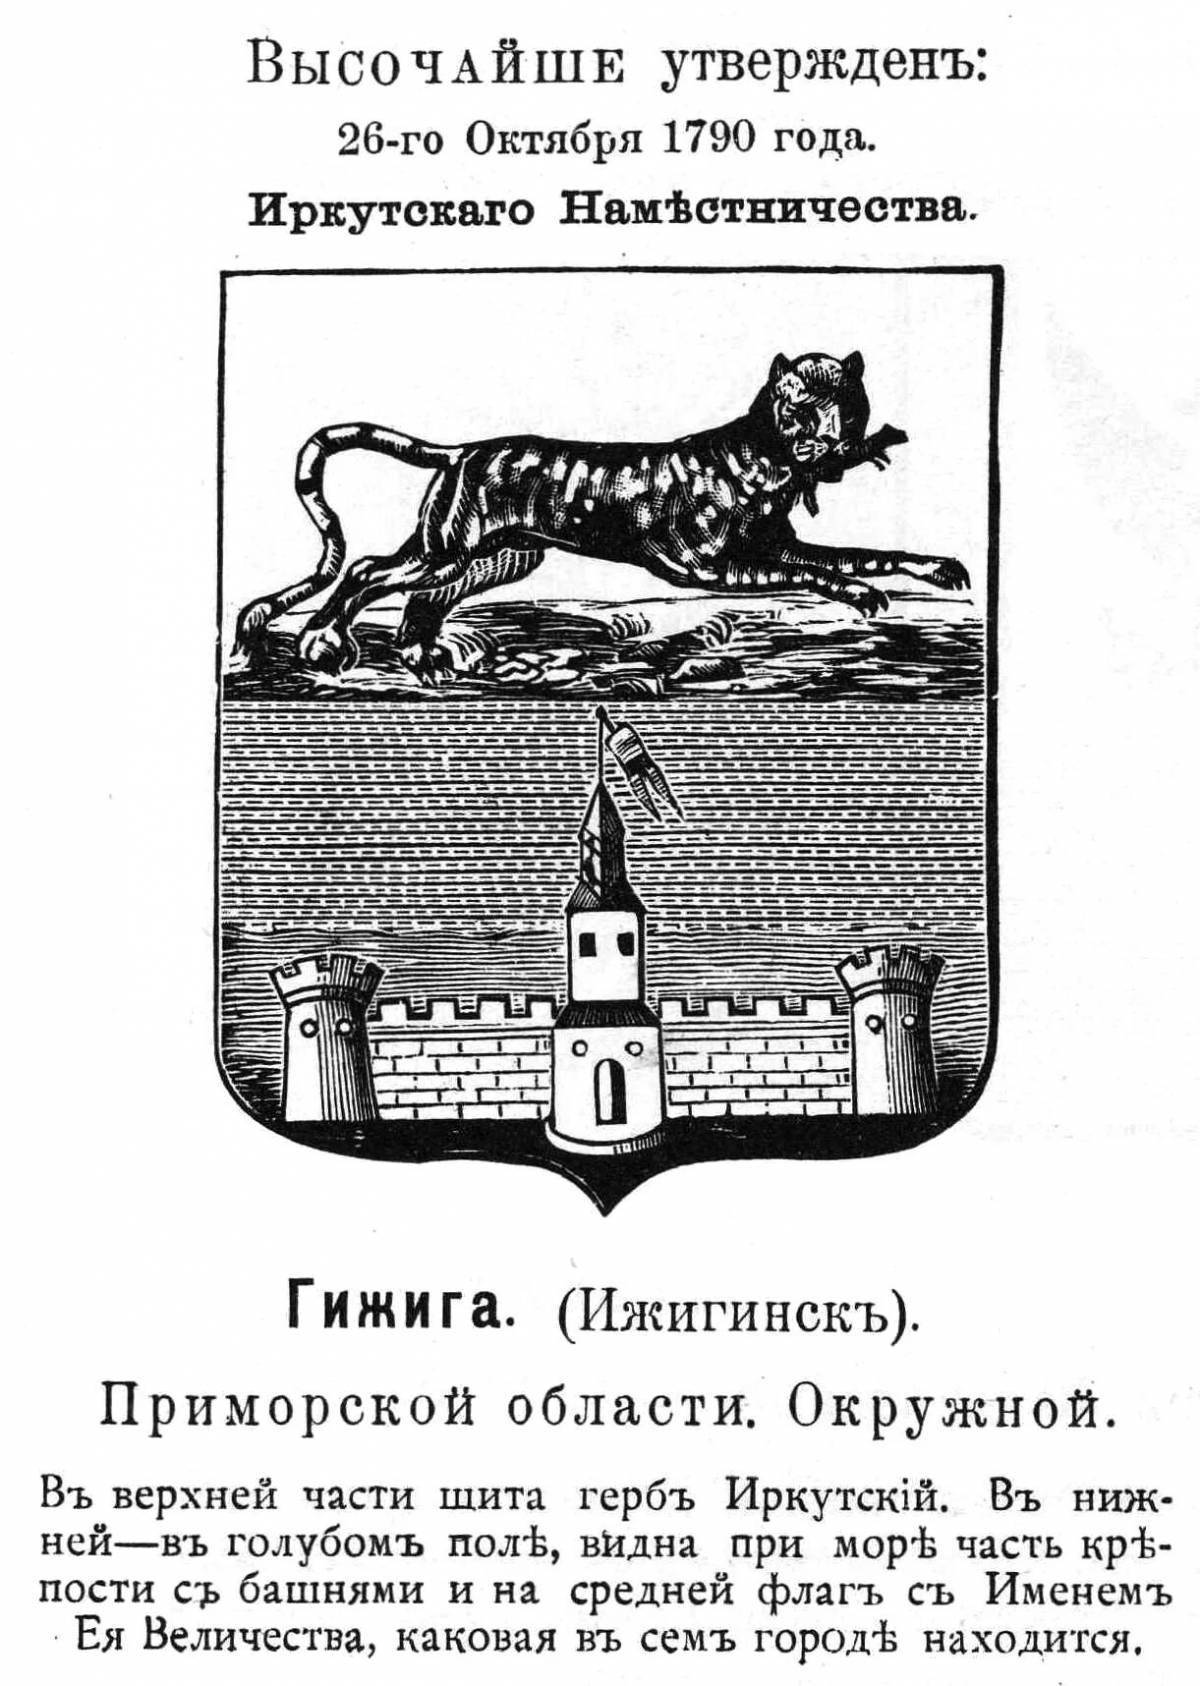 Герб Иркутской губернии 1790